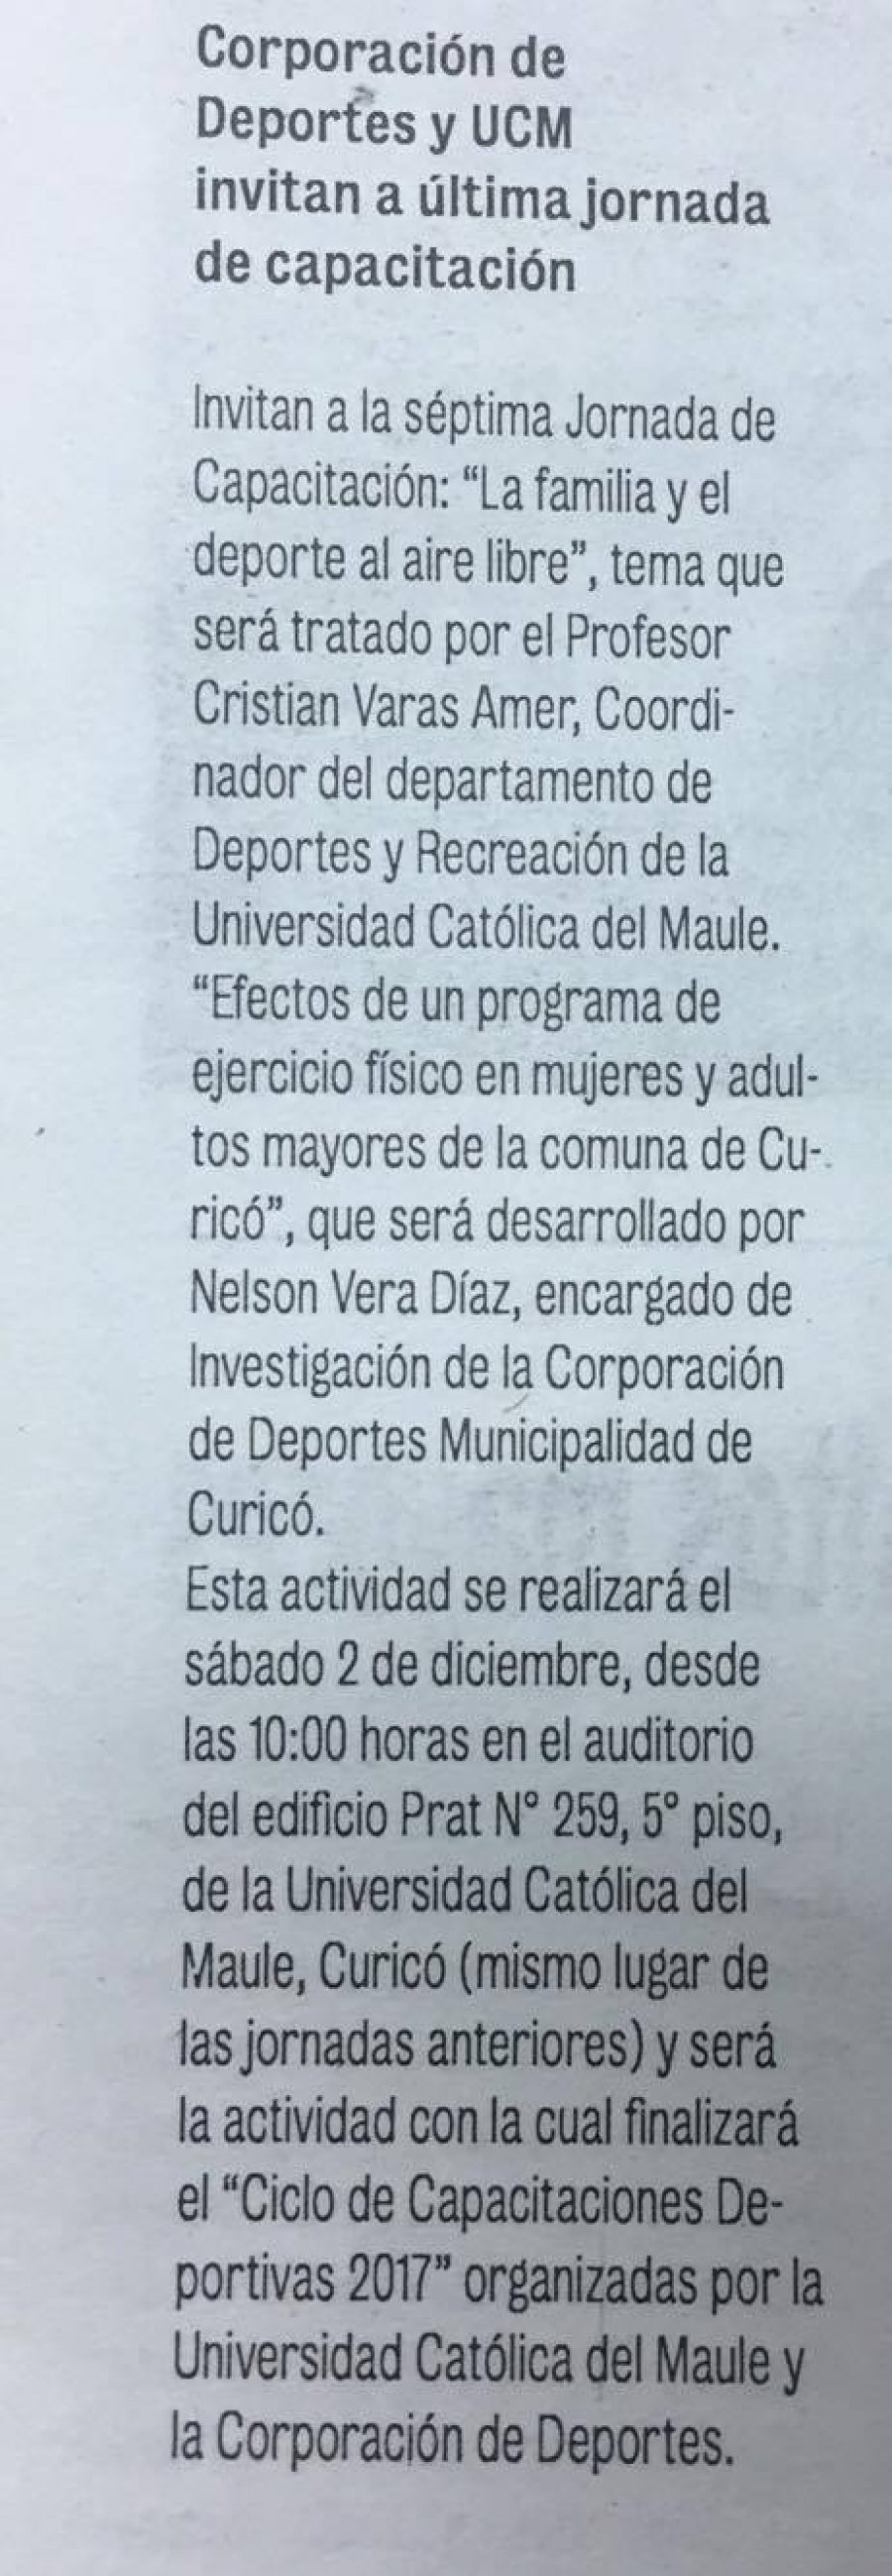 25 de noviembre en Diario La Prensa: “Corporación de Deportes y UCM invitan a última jornada en capacitación”